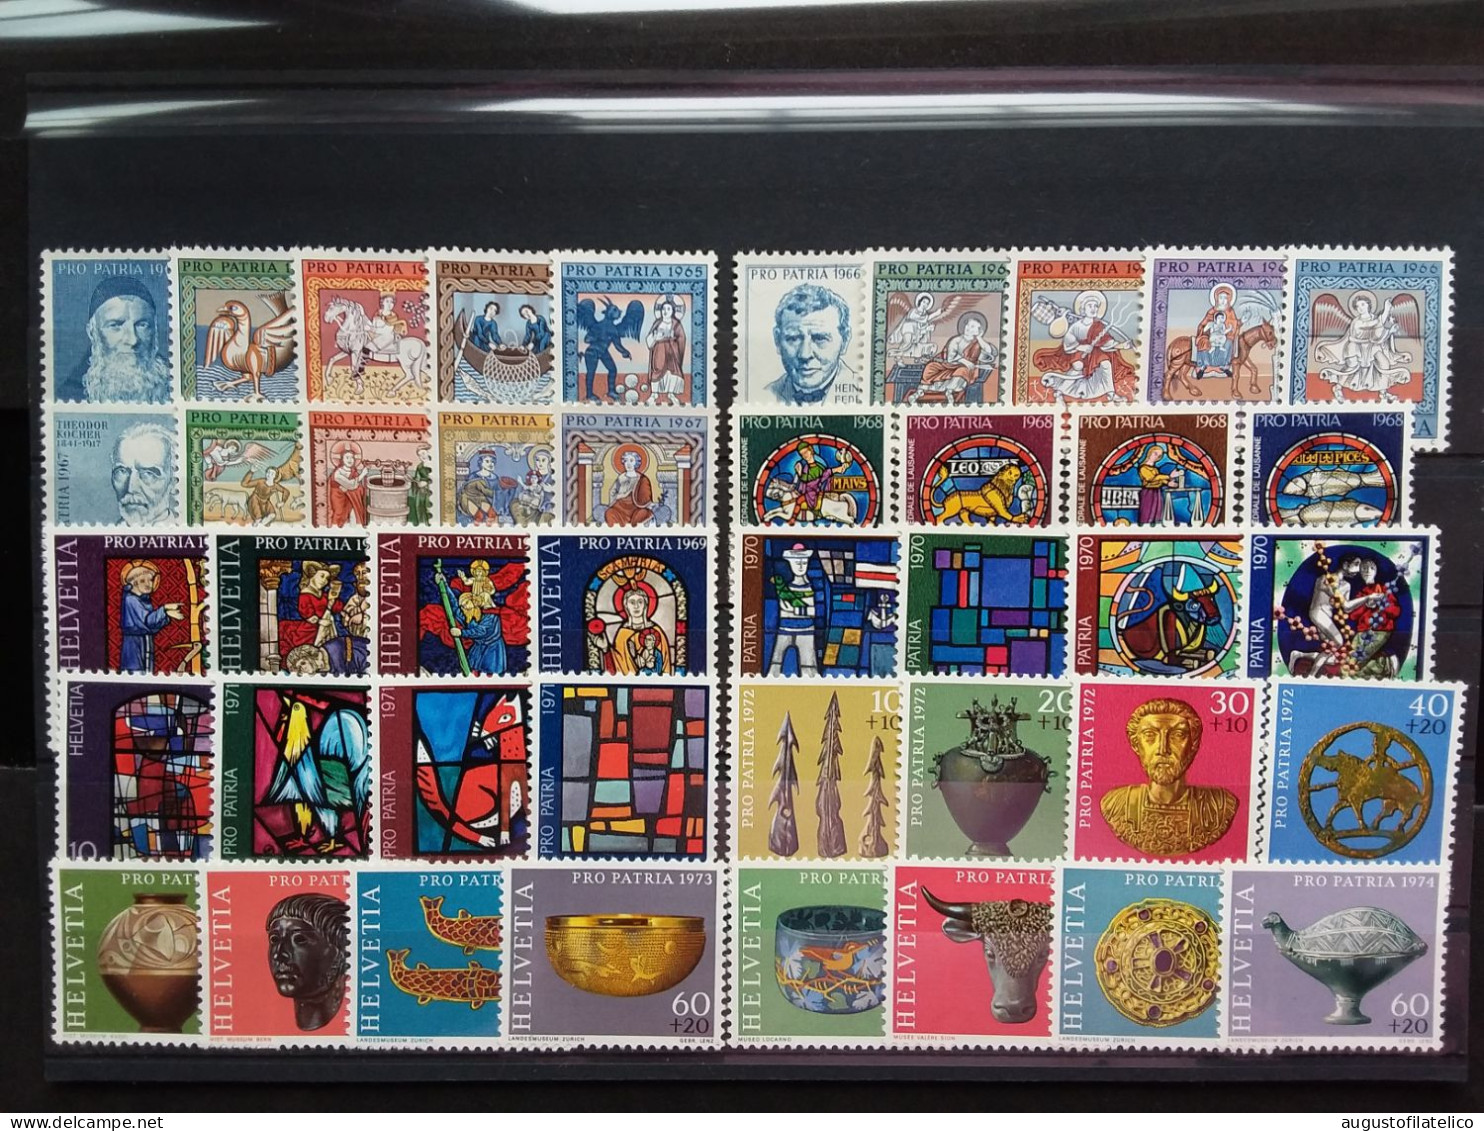 SVIZZERA - 10 Anni Pro Patria Dal 1965 Al 1974 Completo - Nuovi ** - Facciale Frs Sv 16,70 (sottofacciale) + Spese Post. - Unused Stamps